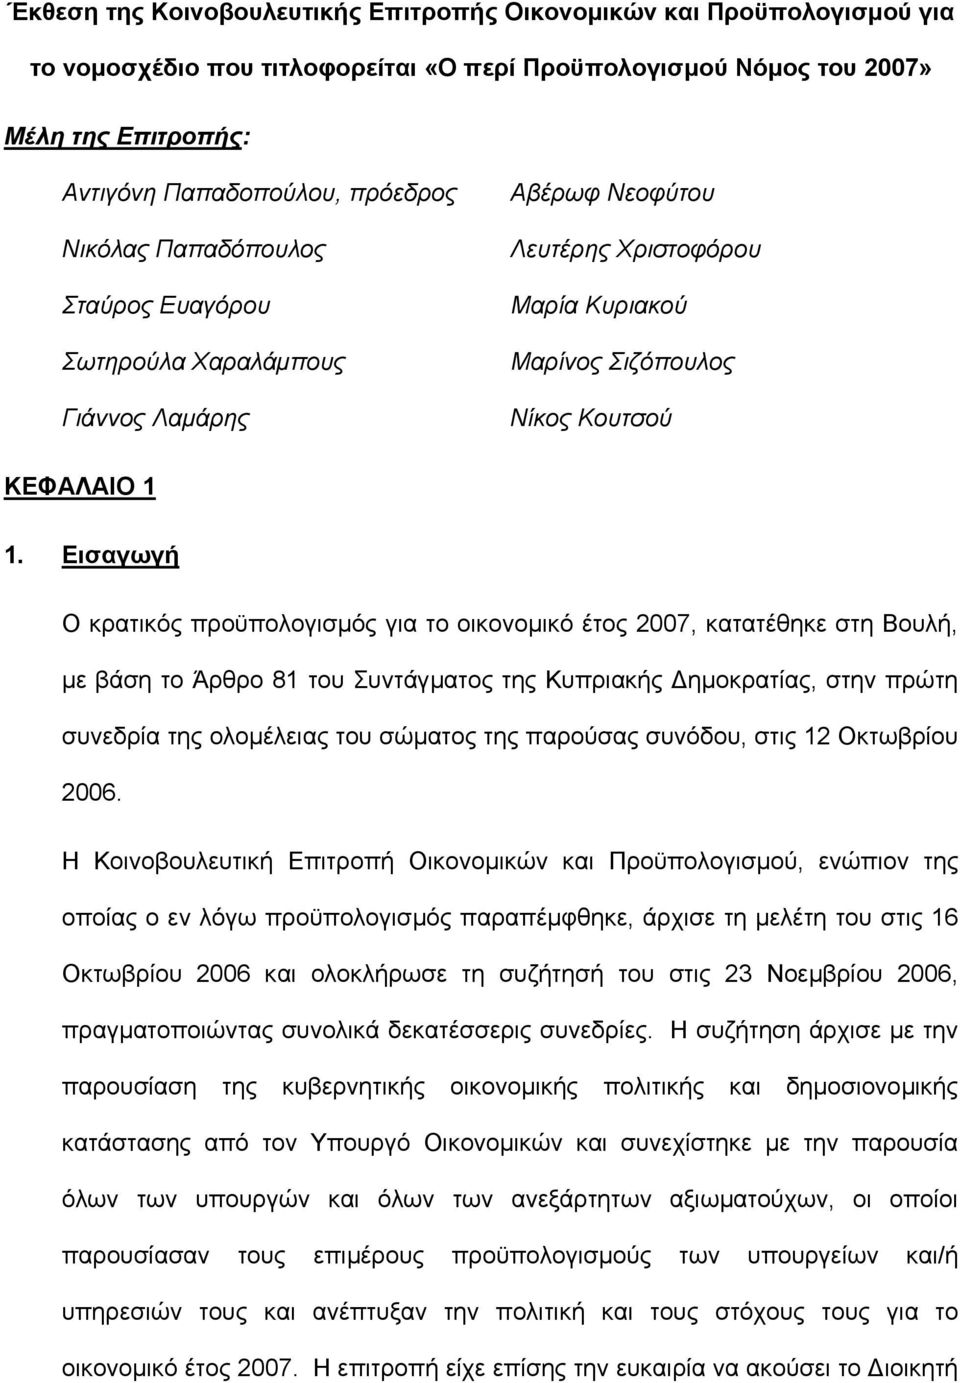 Εισαγωγή Ο κρατικός προϋπολογισµός για το οικονοµικό έτος 2007, κατατέθηκε στη Βουλή, µε βάση το Άρθρο 81 του Συντάγµατος της Κυπριακής ηµοκρατίας, στην πρώτη συνεδρία της ολοµέλειας του σώµατος της